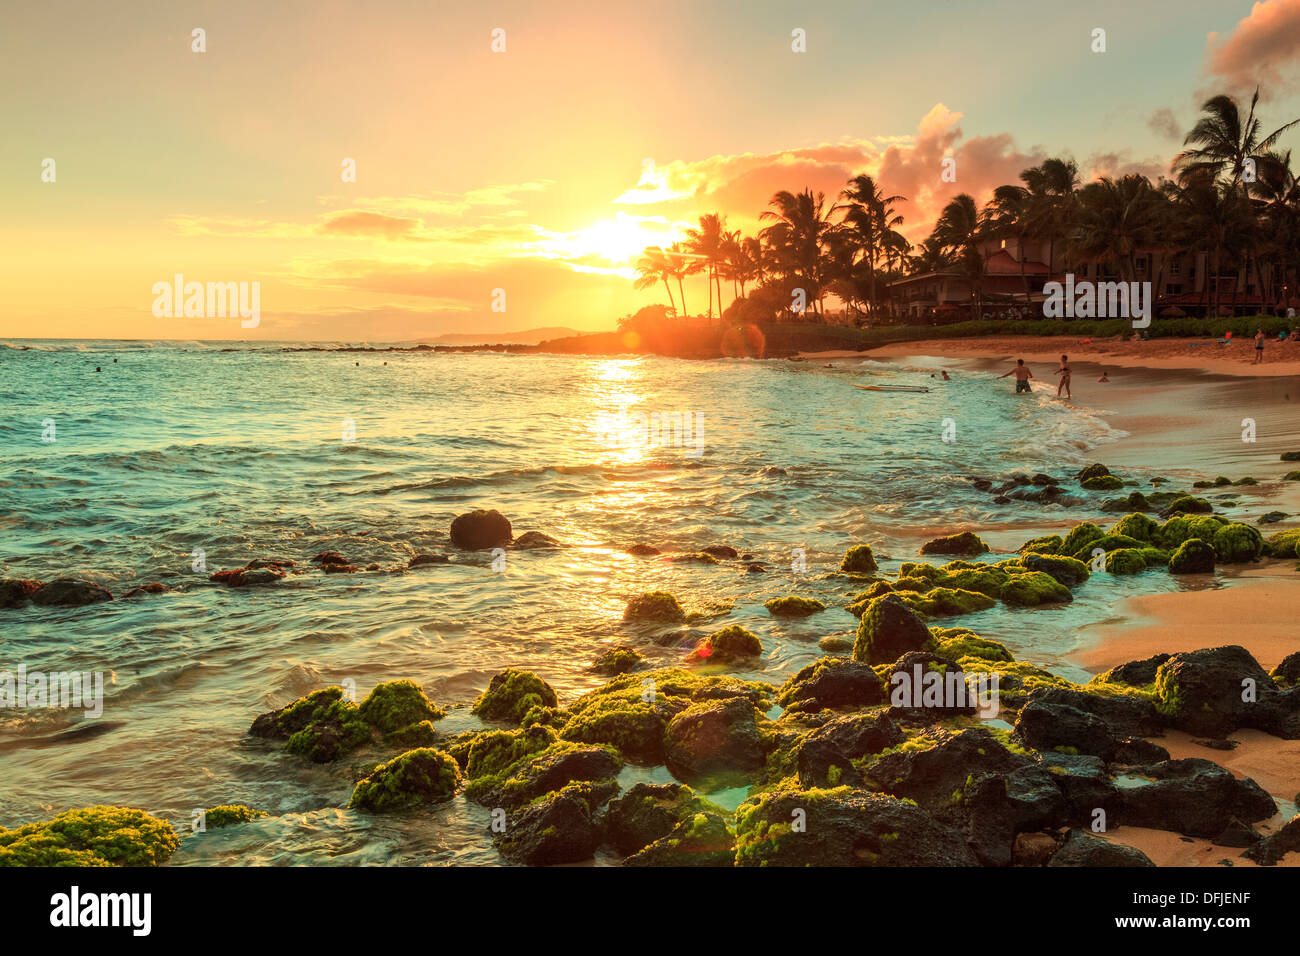 USA, Hawaii, Kauai, The Luxurious resort area of Poipu Beach Stock Photo